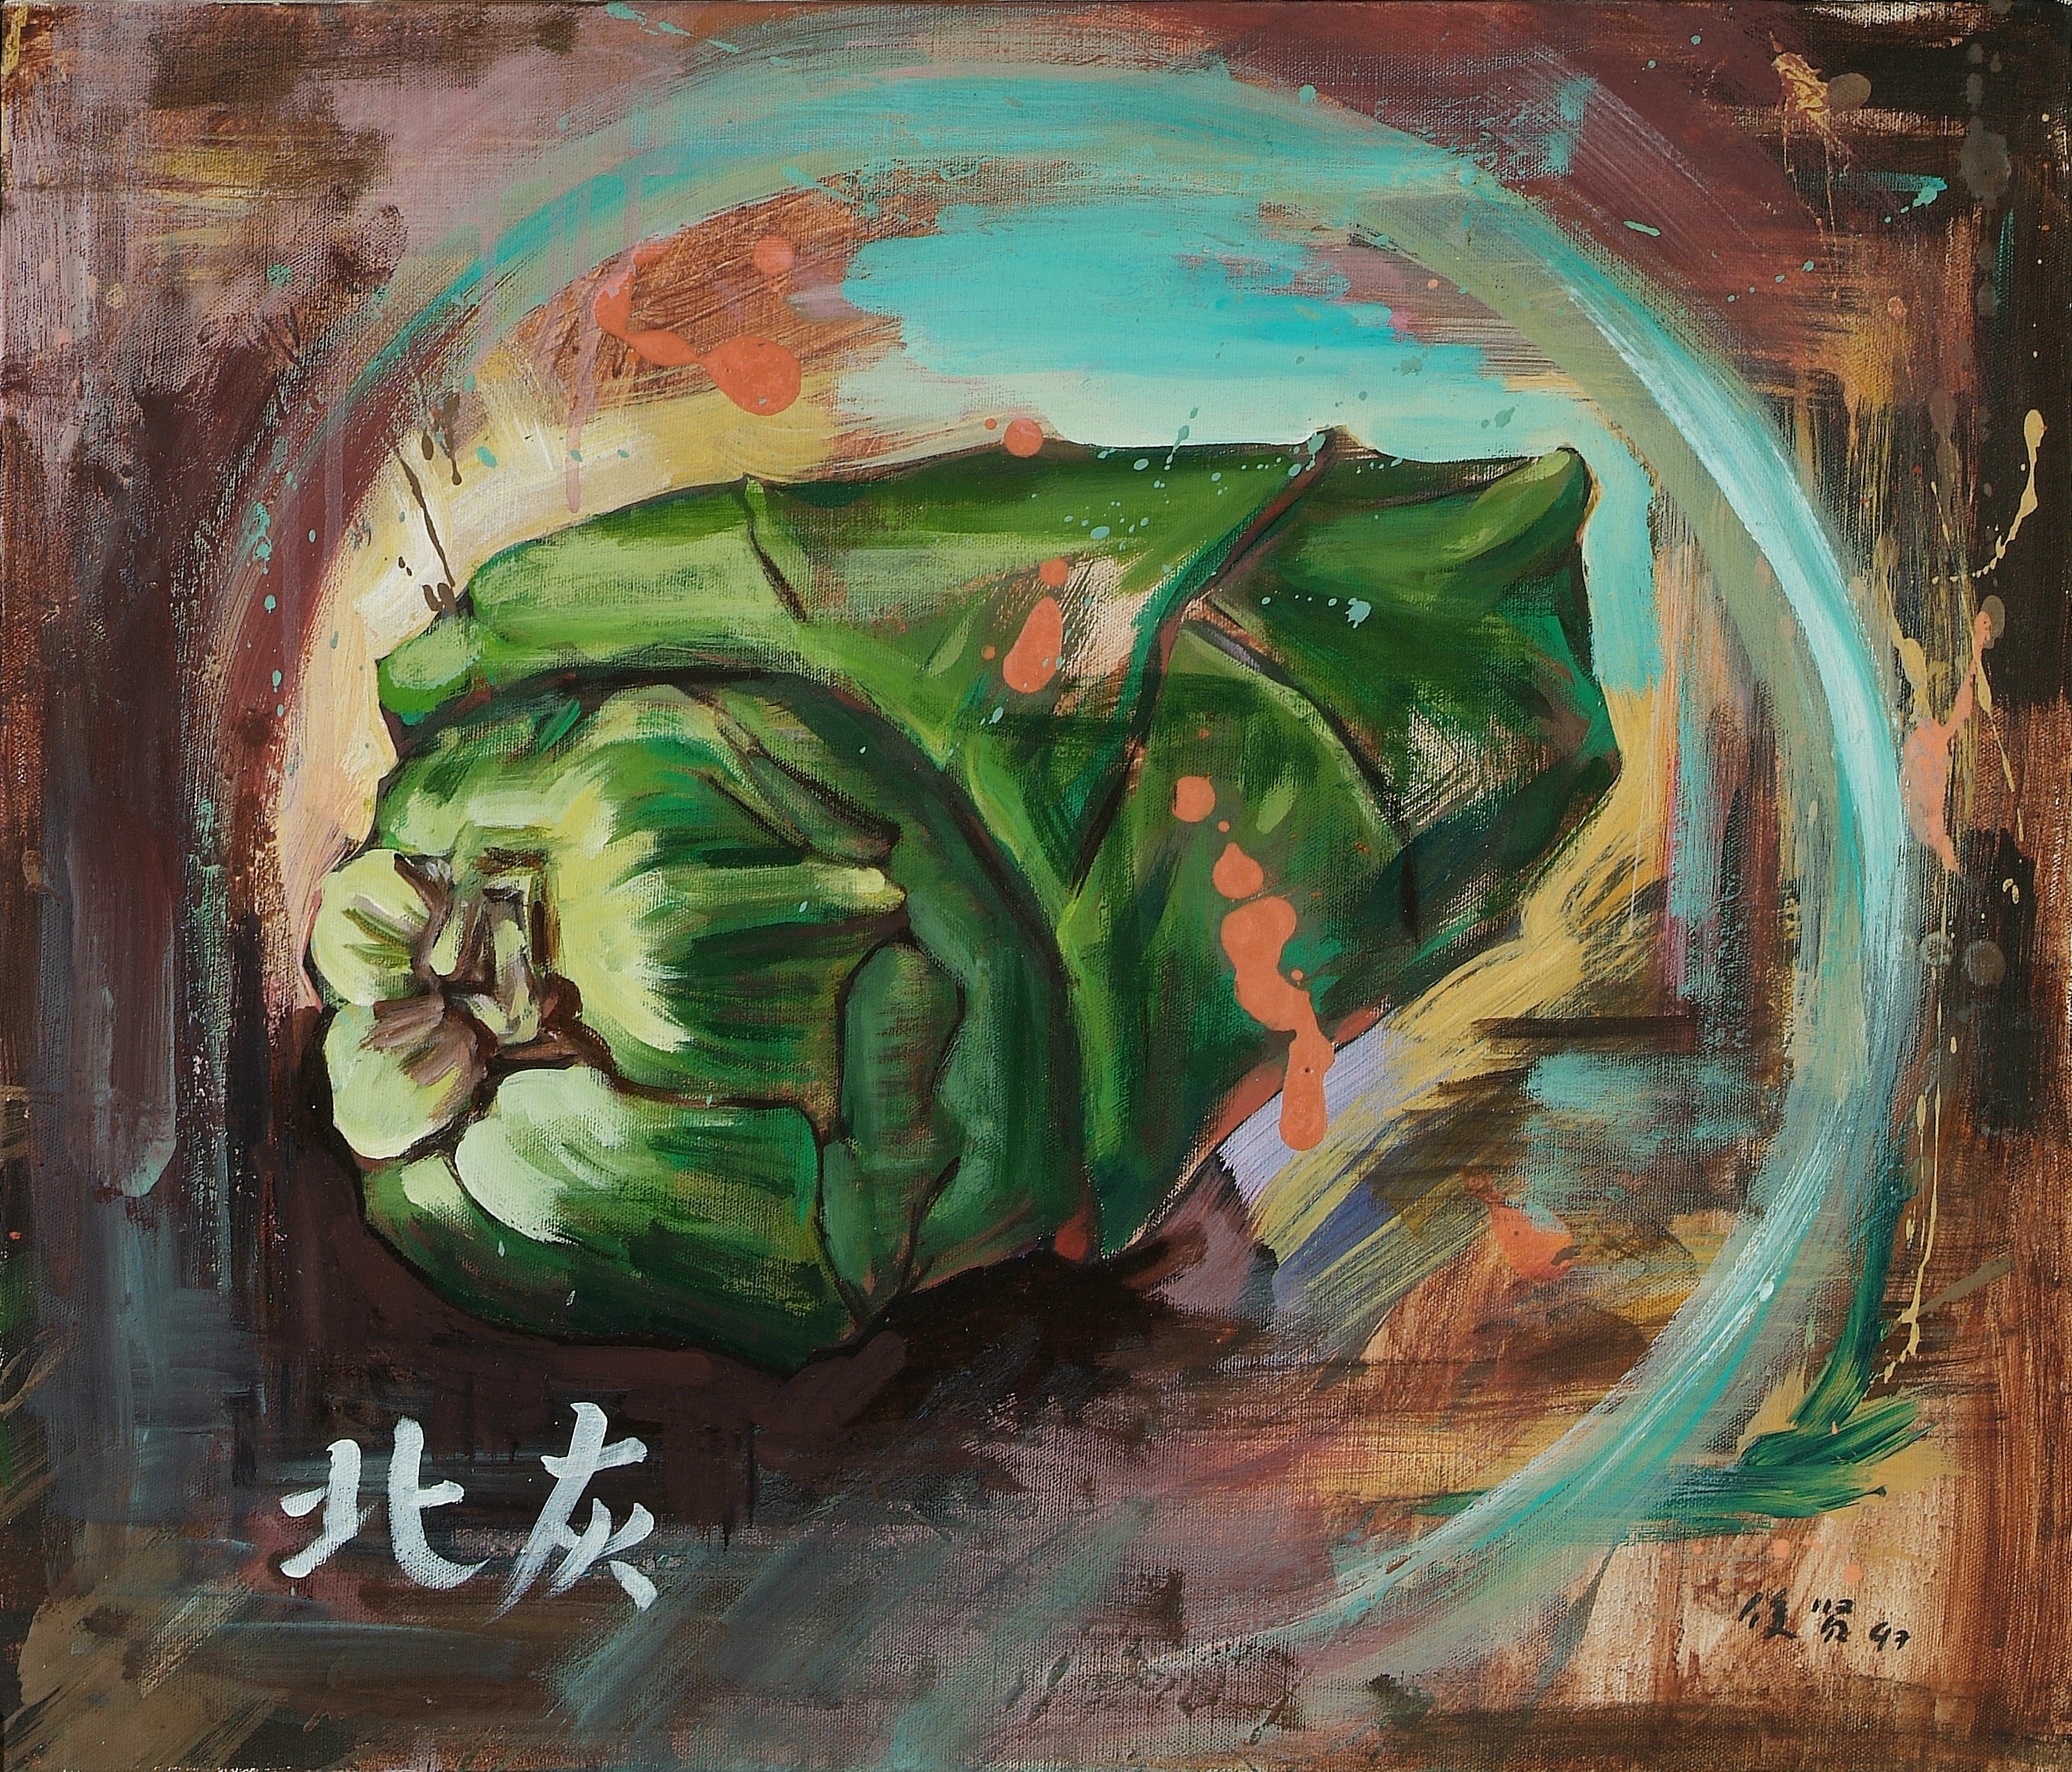 李俊賢
Jiun-Shyan Li/	
北灰
Betel-Nut/
1997/	
45x53cm/	
壓克力顏料、畫布
Acrylic on canvas
